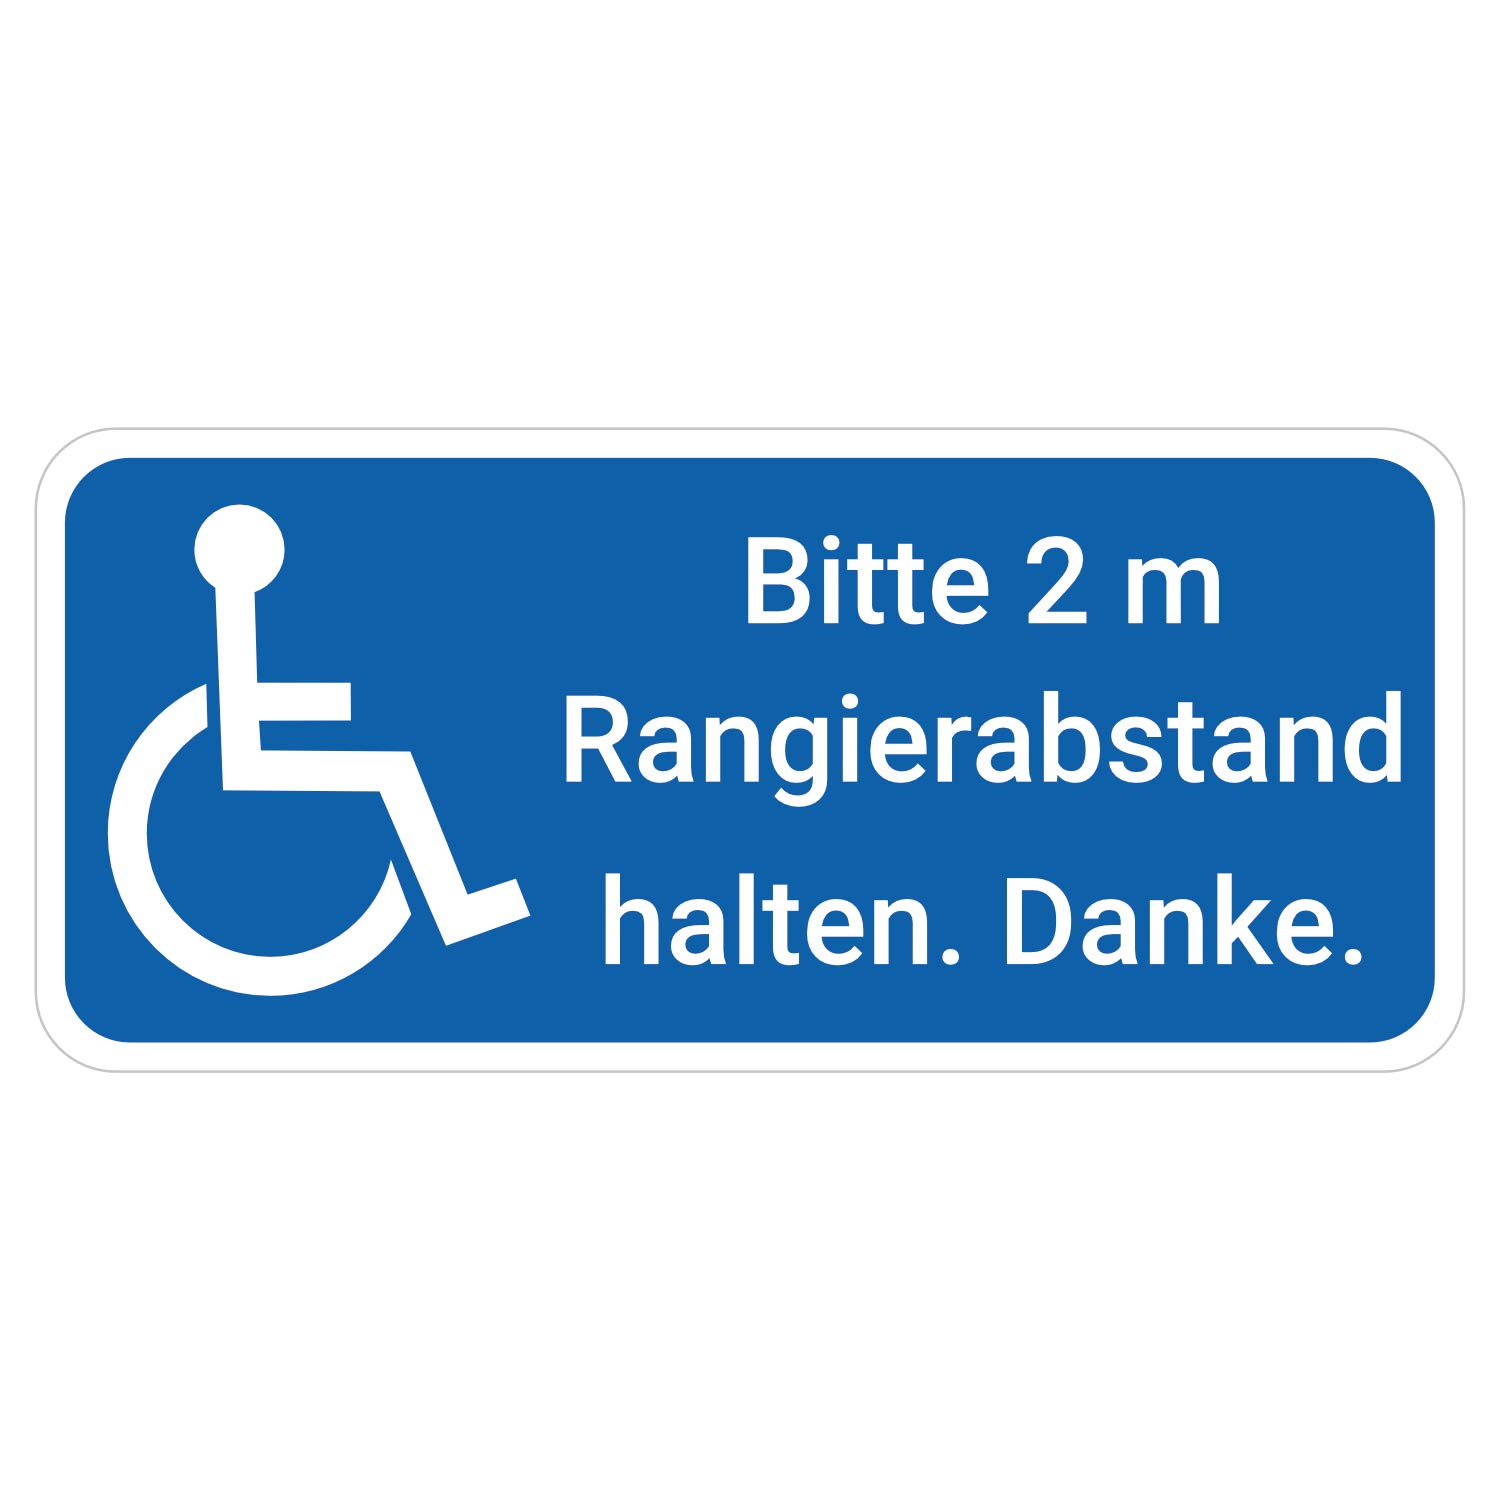 deformaze Sticker Rollstuhlfahrer Behinderten Aufkleber Bitte 2 m Rangierabstand halten Warnaufkleber 20 x 9 cm Rolli quer Auto KFZ Scheibe UV Wetterfest von deformaze